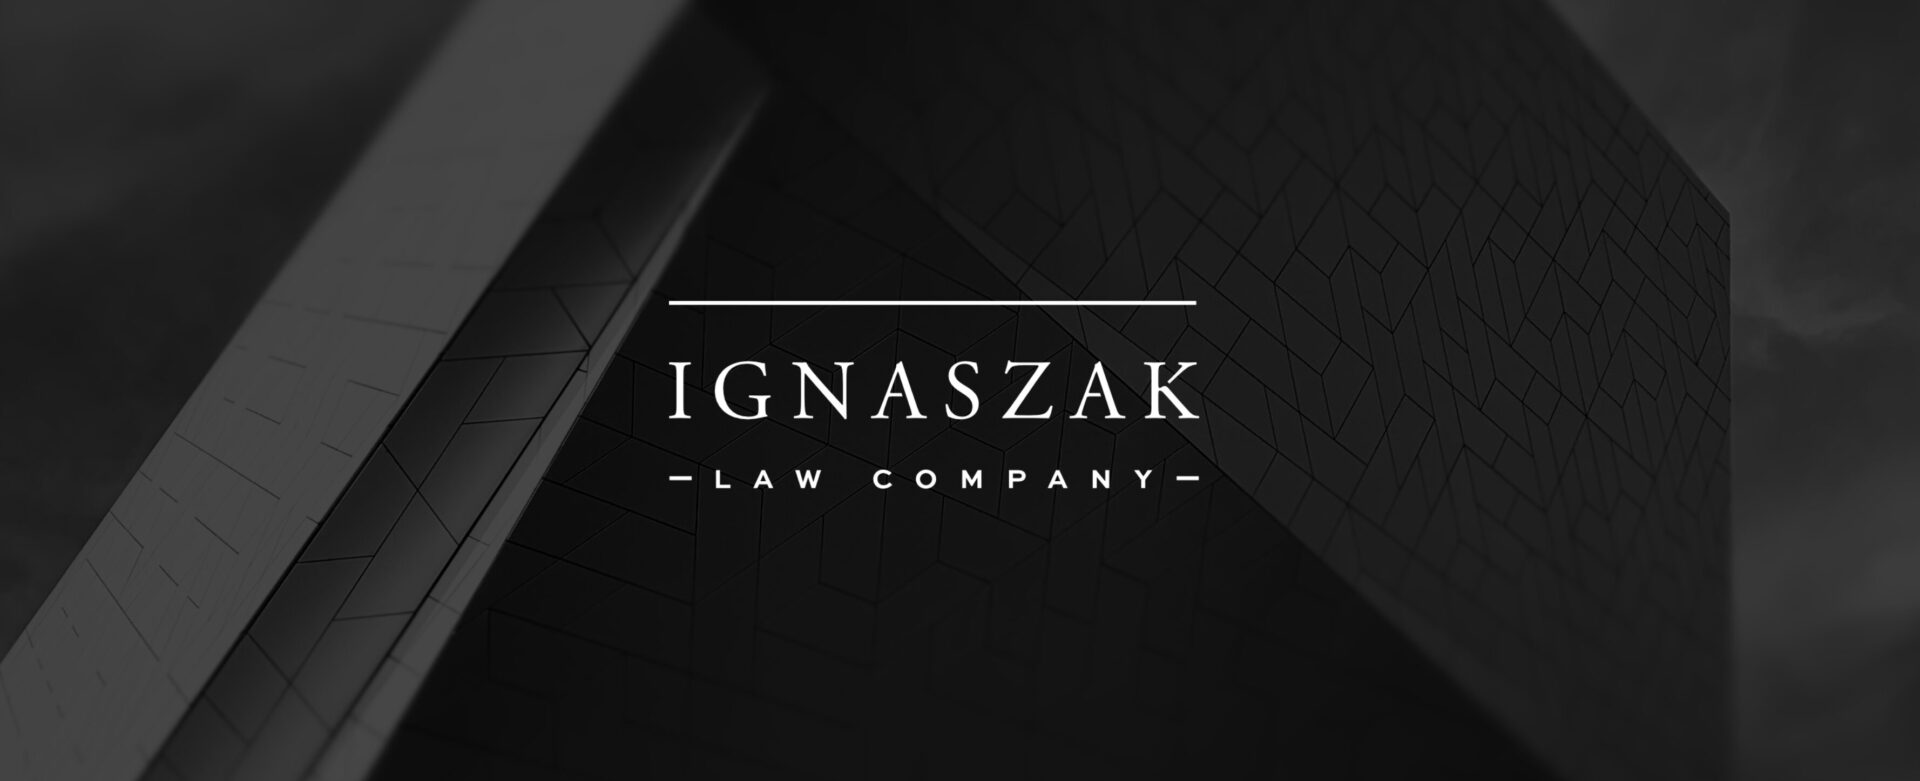 Ignaszak Law Company